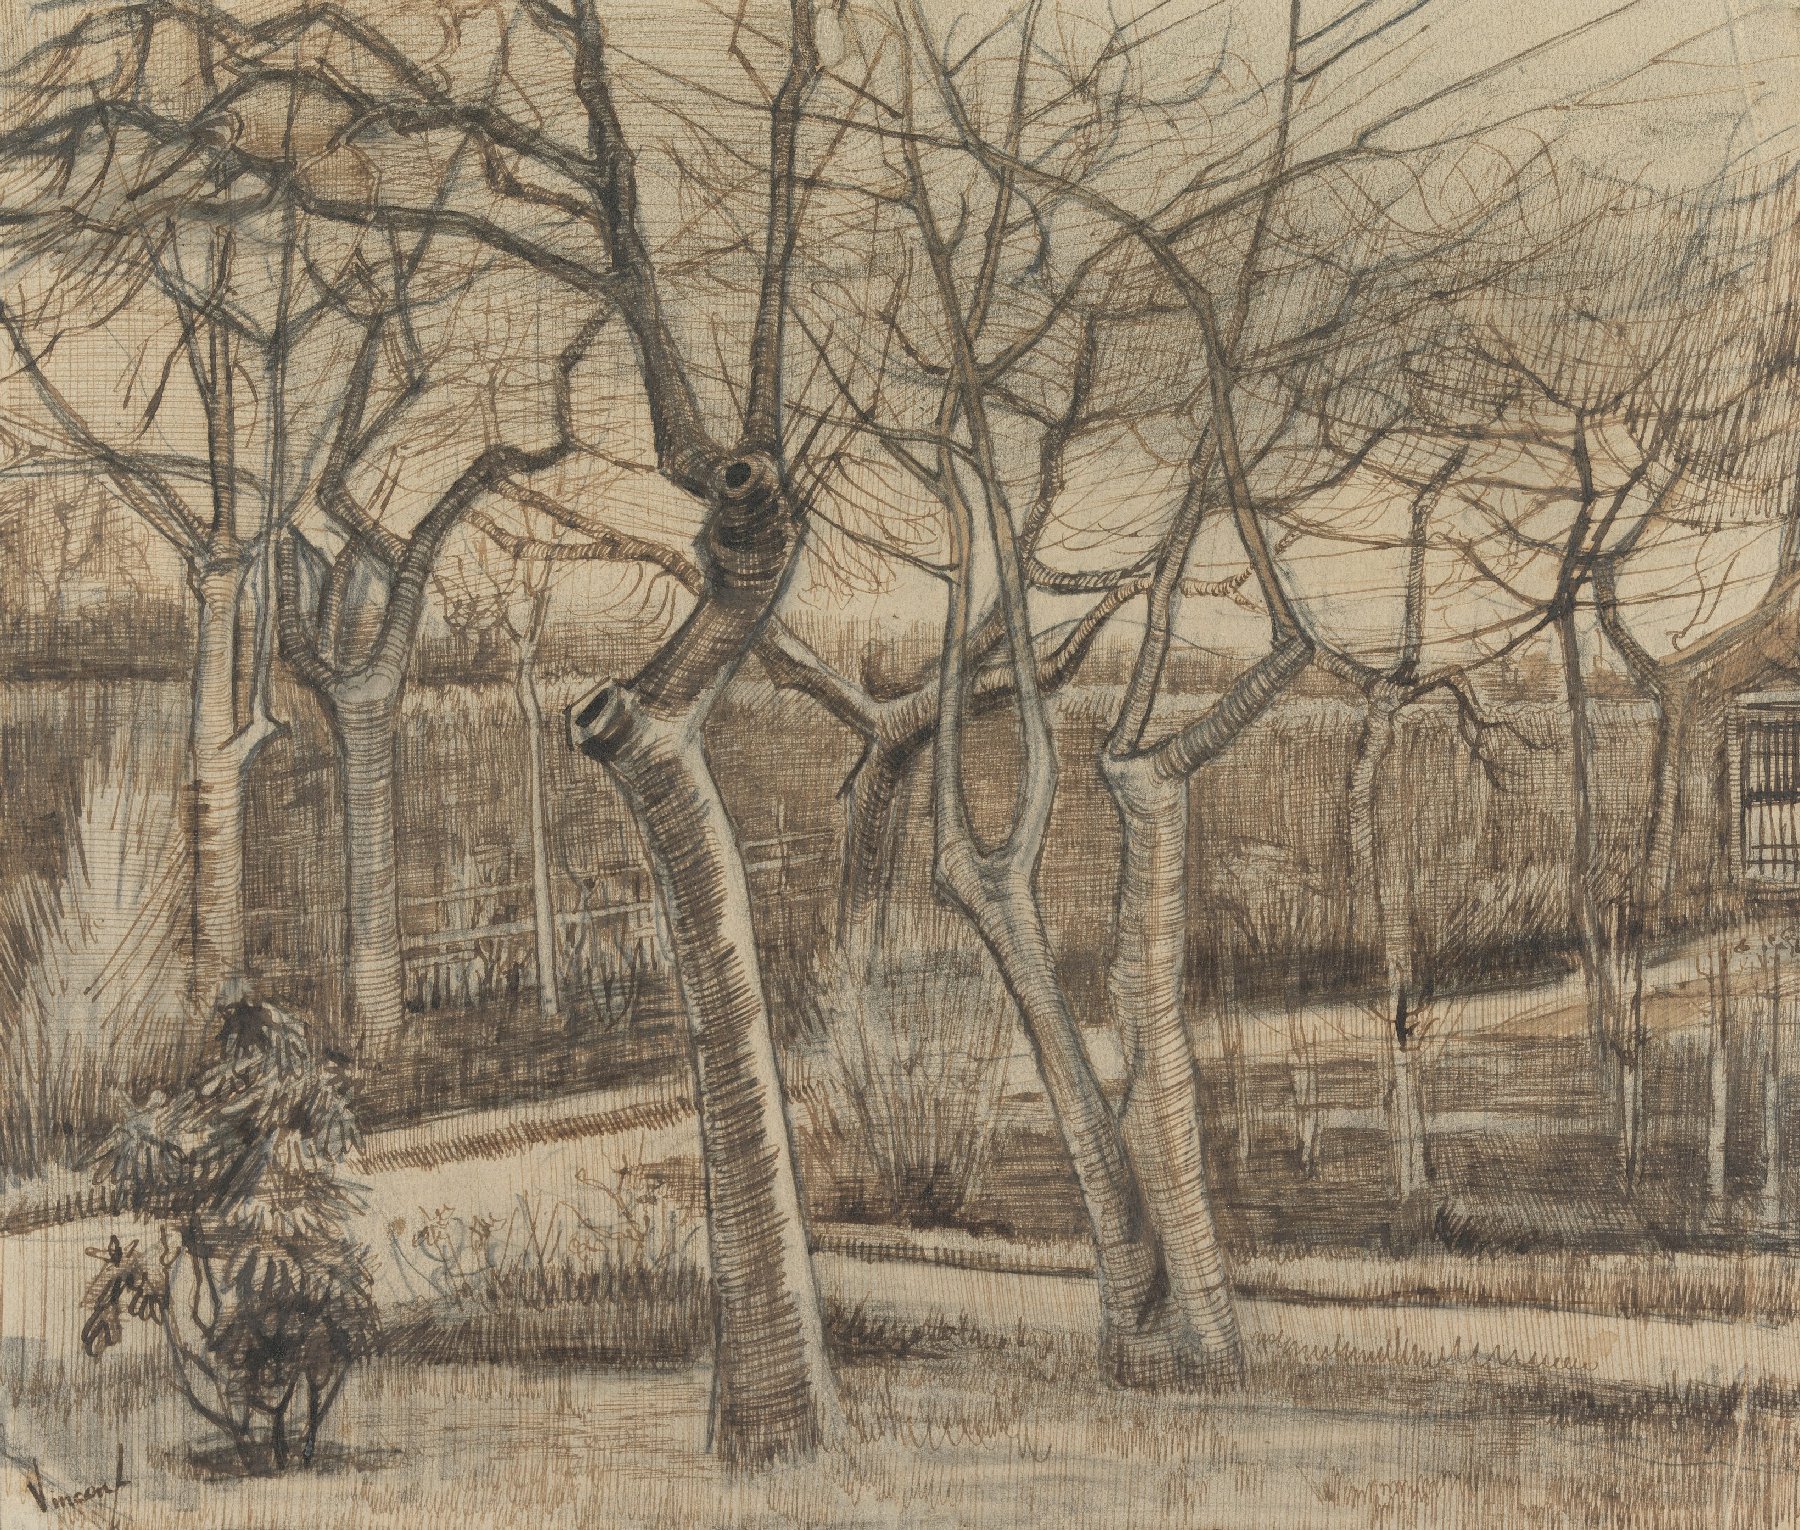 Pastorietuin Vincent van Gogh (1853 - 1890), Nuenen, maart 1884